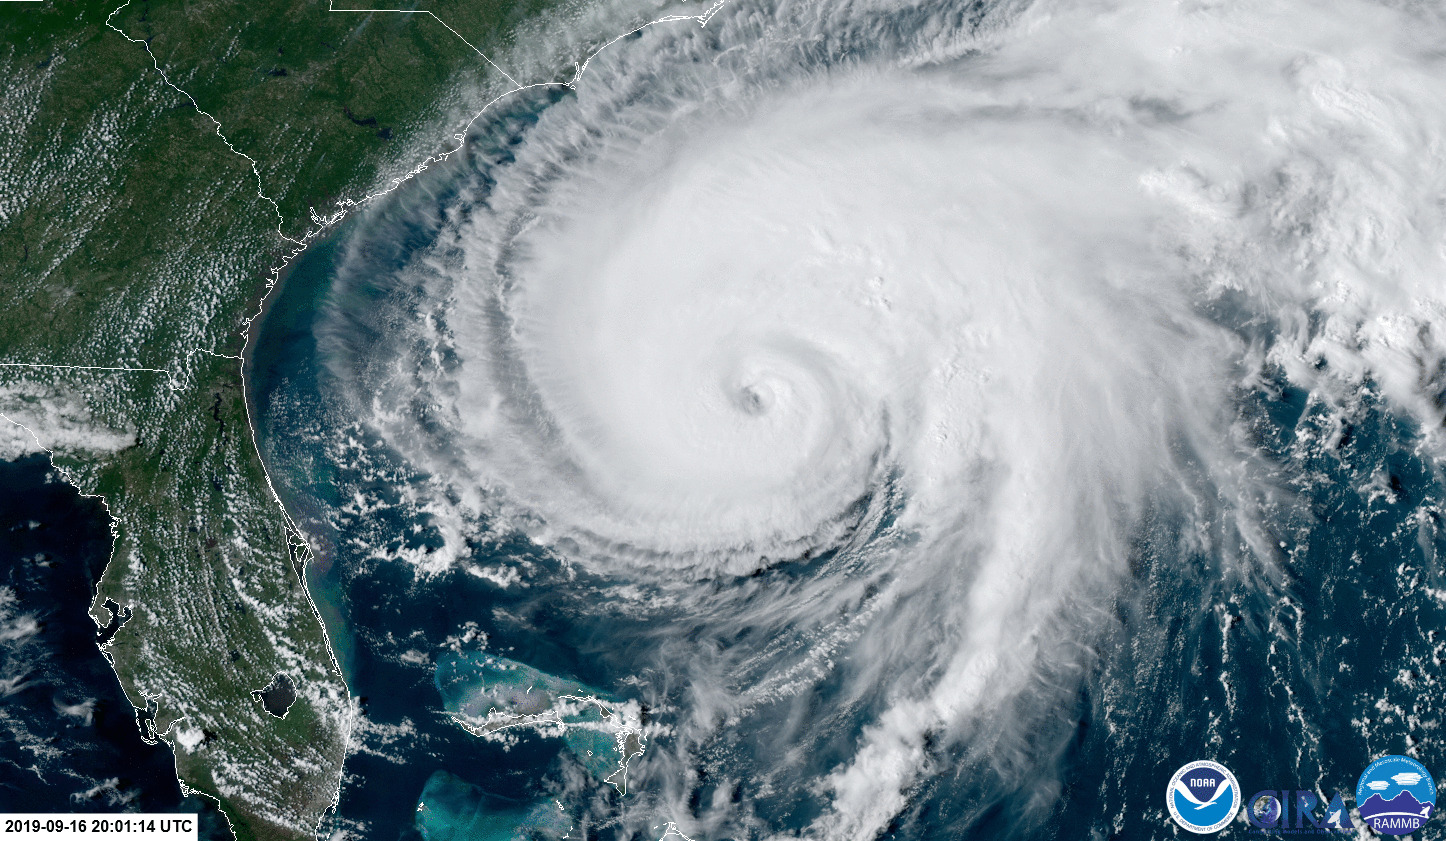 NOAA Sees the Fifth Hurricane Humberto Through High-powered Lens